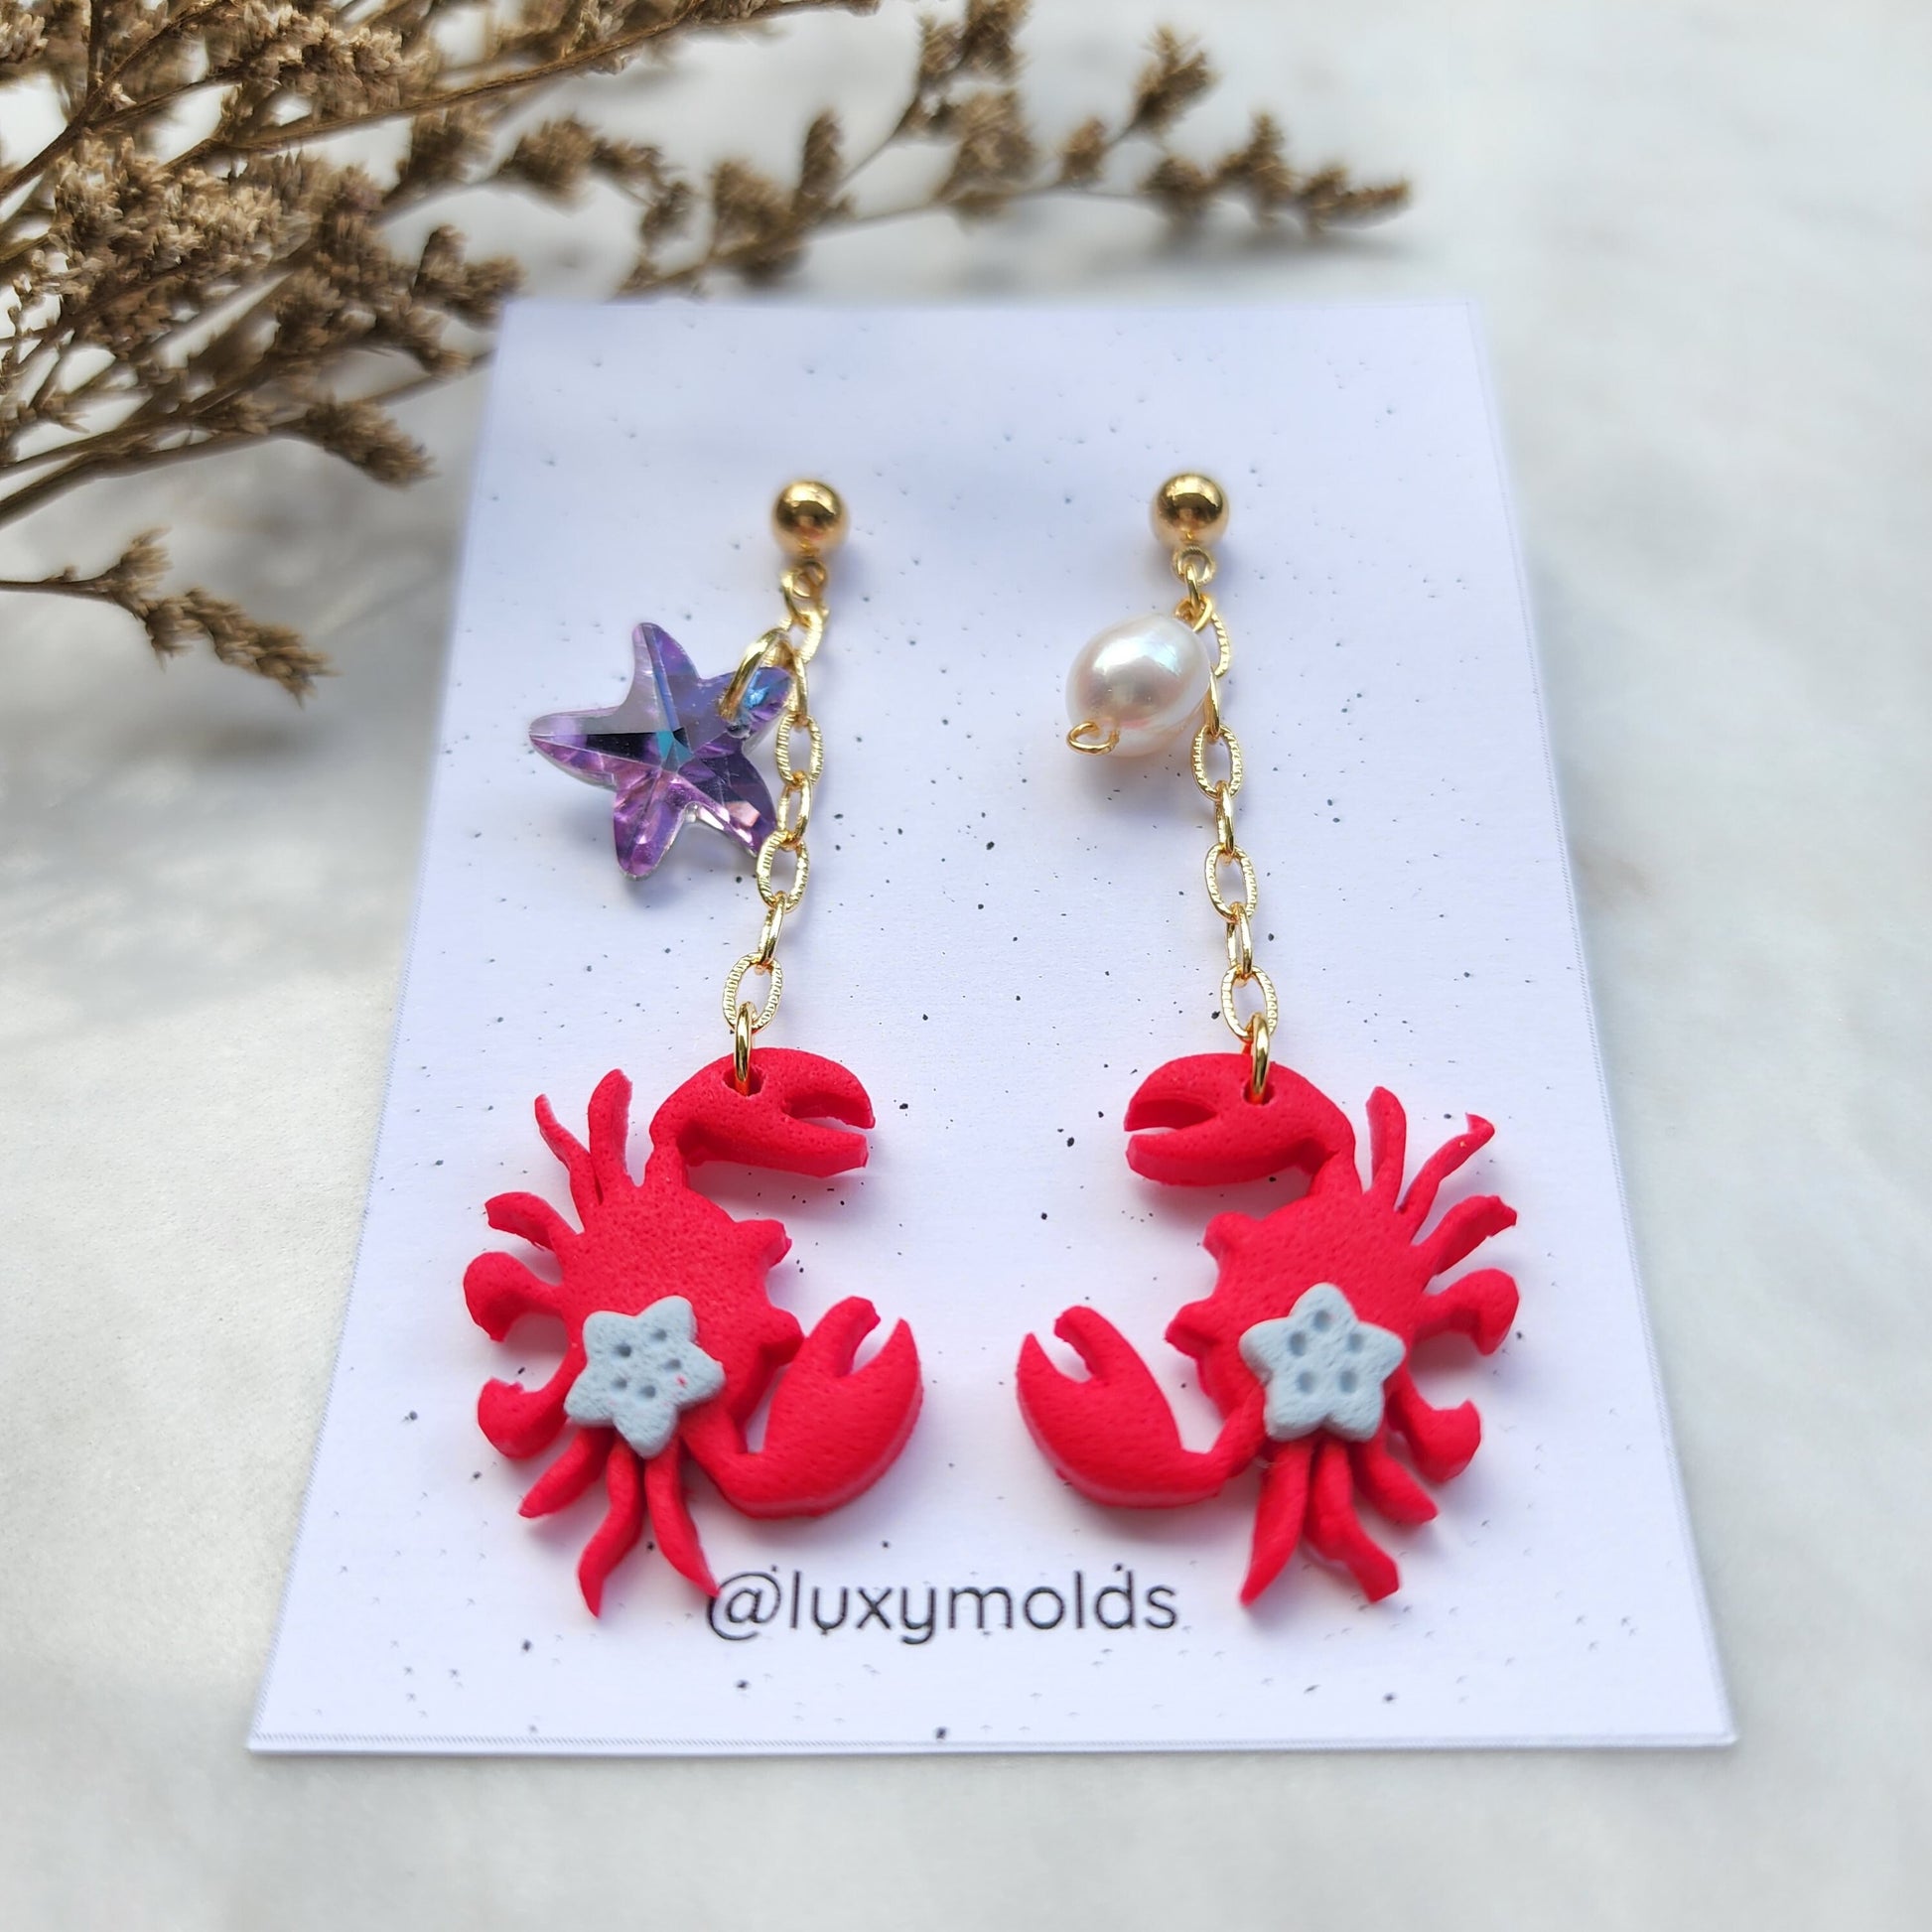 Polymer clay earrings / Summer earrings /Octopus earrings / Coral earrings / Crab earrings / Fin earrings / Wood resin earrings/Red earrings